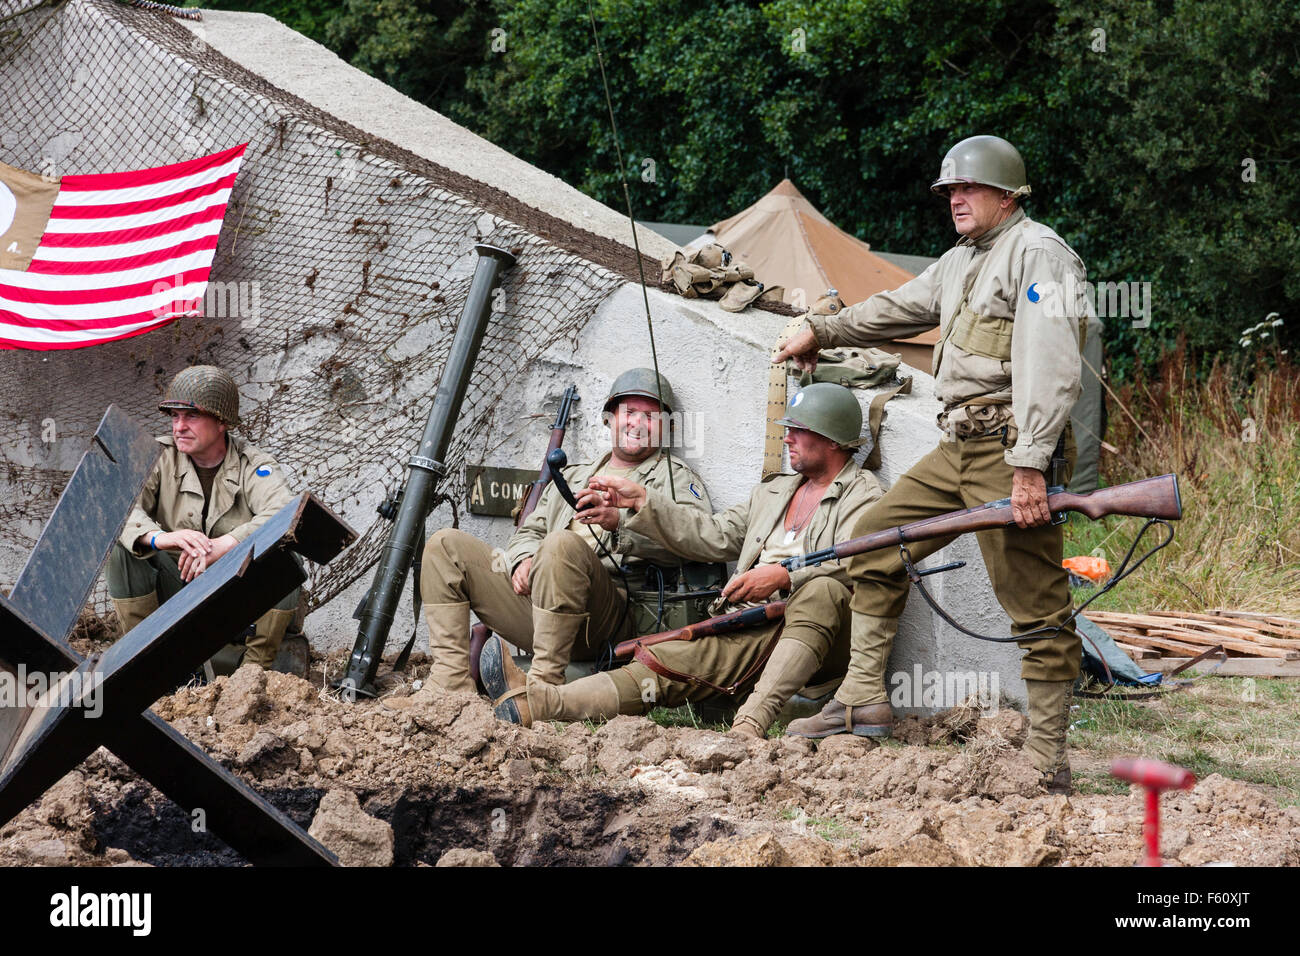 La Seconda Guerra Mondiale La Rievocazione Un Gruppo Di Soldati Americani Seduto Da Bunker Tedesco Chattare E Rilassante Varie Divise Foto Stock Alamy